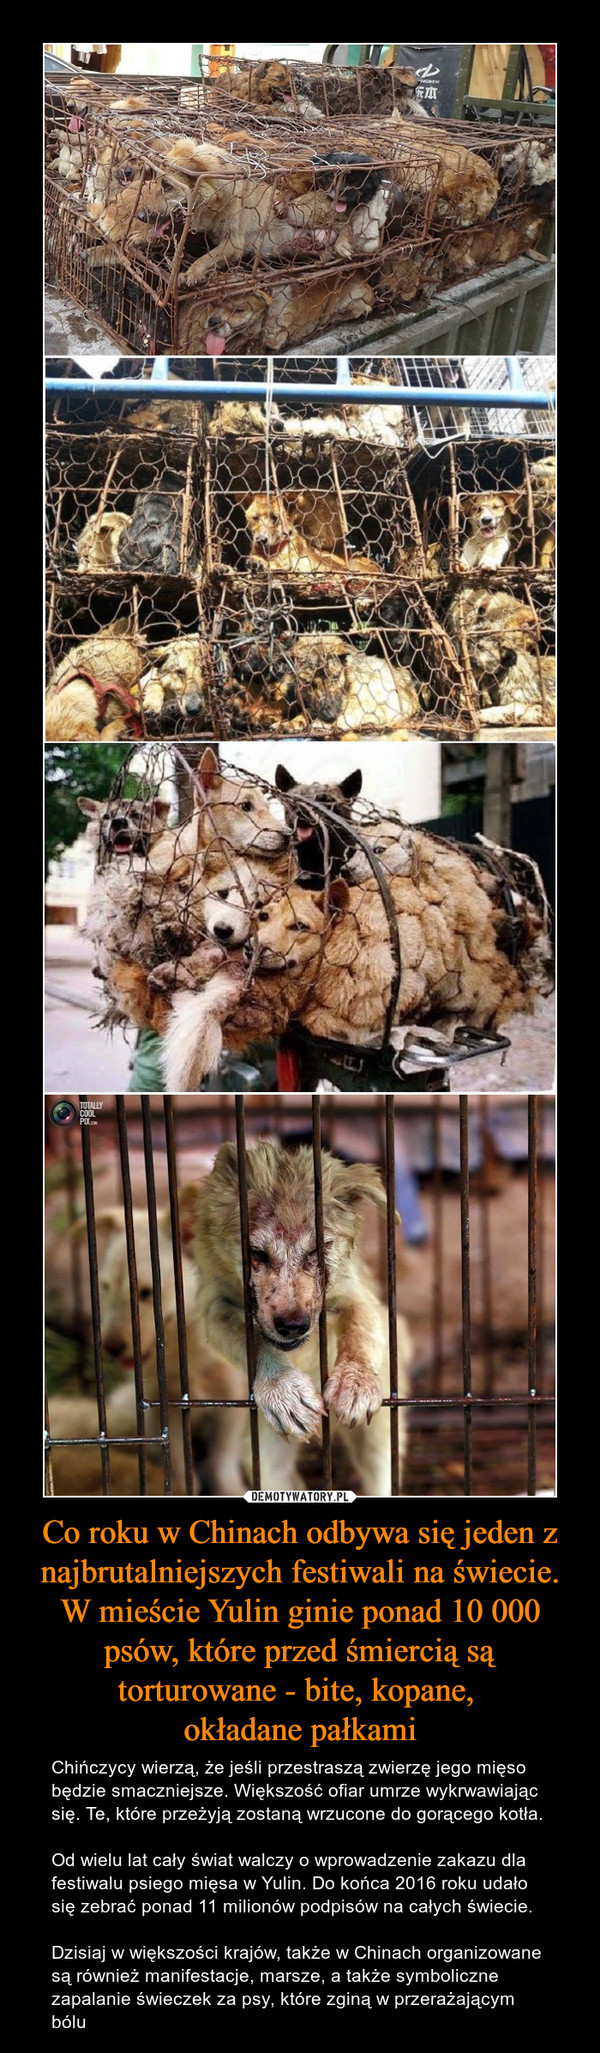 Co roku w Chinach odbywa się jeden z najbrutalniejszych festiwali na świecie. W mieście Yulin ginie ponad 10 000 psów, które przed śmiercią są torturowane - bite, kopane, 
okładane pałkami